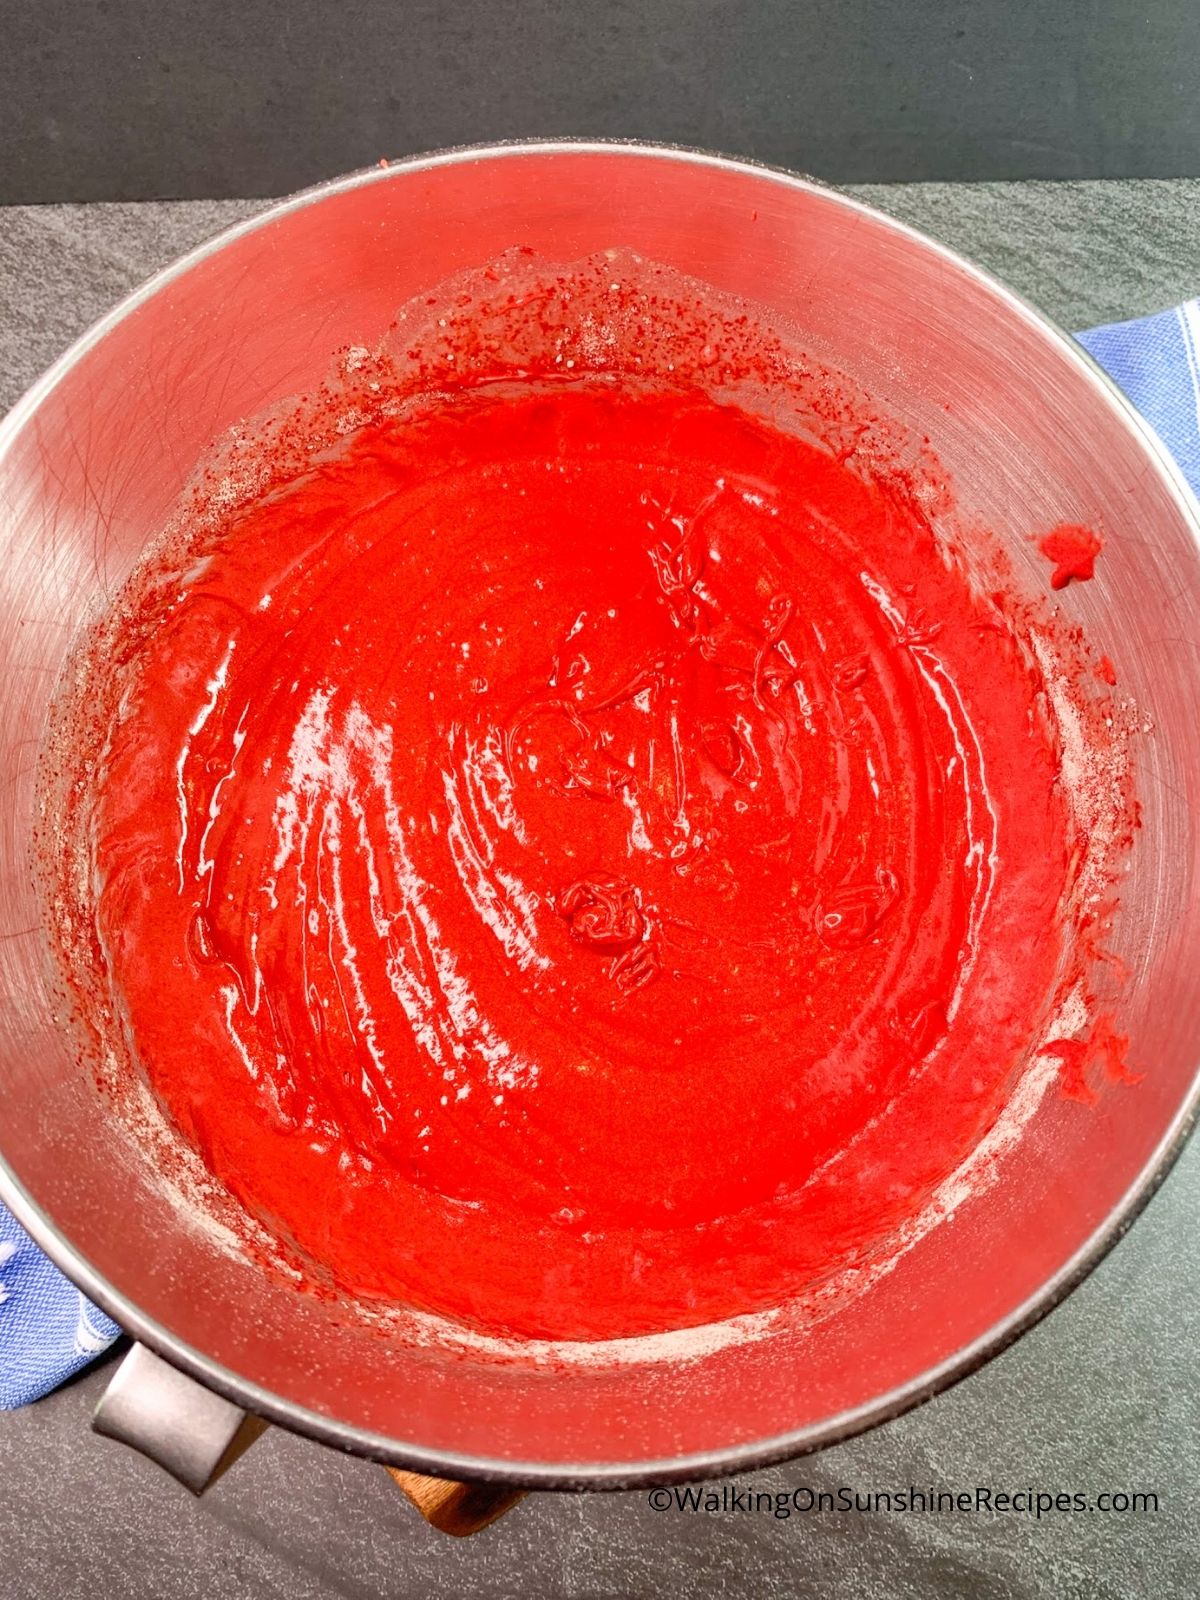 Red velvet cake completely blended in mixing bowl.